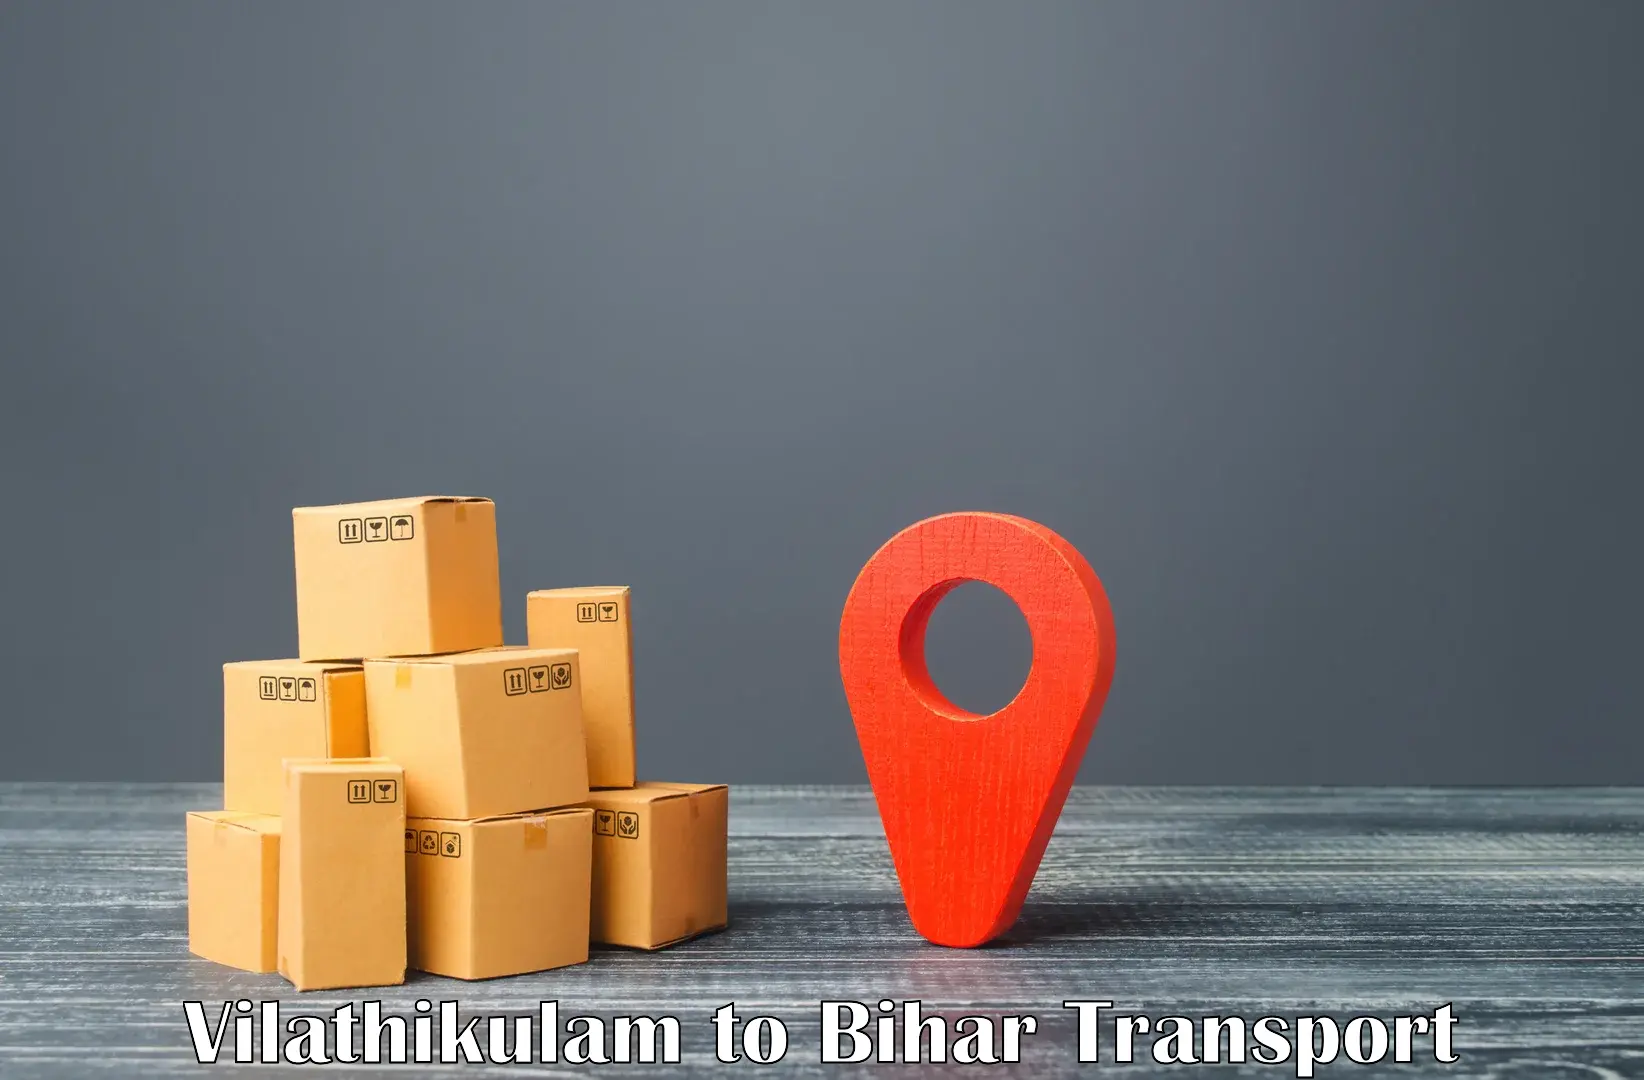 Nearby transport service Vilathikulam to Mashrakh